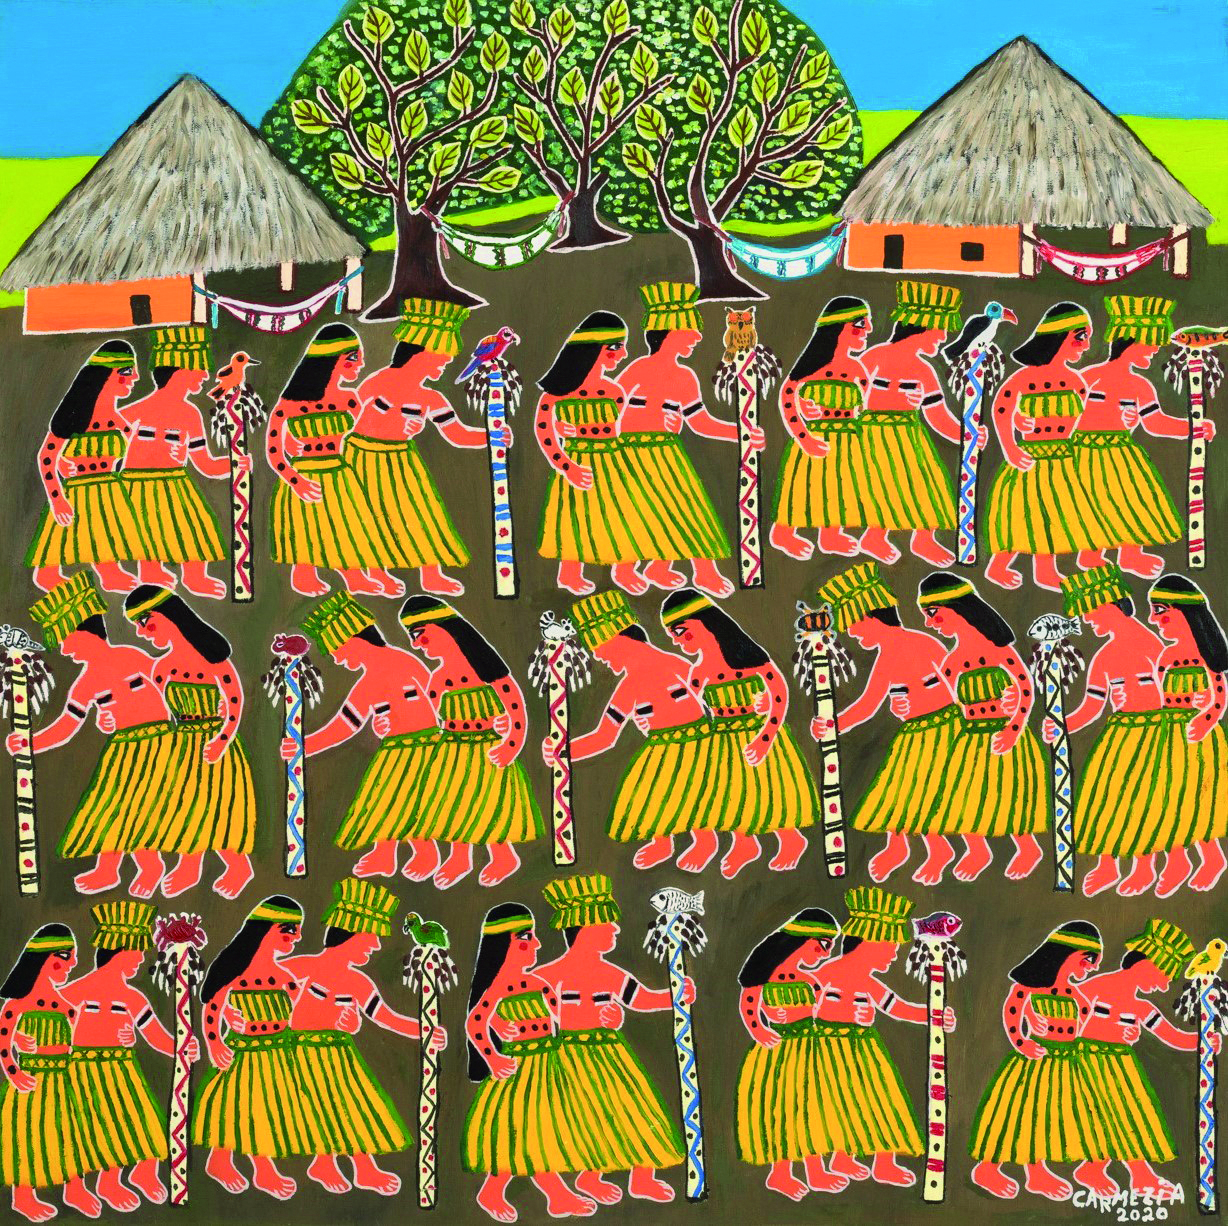 Obra de arte. Casais indígenas em um ritual, alinhados em três filas. Os homens vestem um longo saiote e seguram um cajado com uma ave na ponta. As mulheres usam longo saiote e cobertura no busto. Eles têm pinturas pelo corpo. Ao fundo, redes de descanso penduradas entre as árvores e ocas.